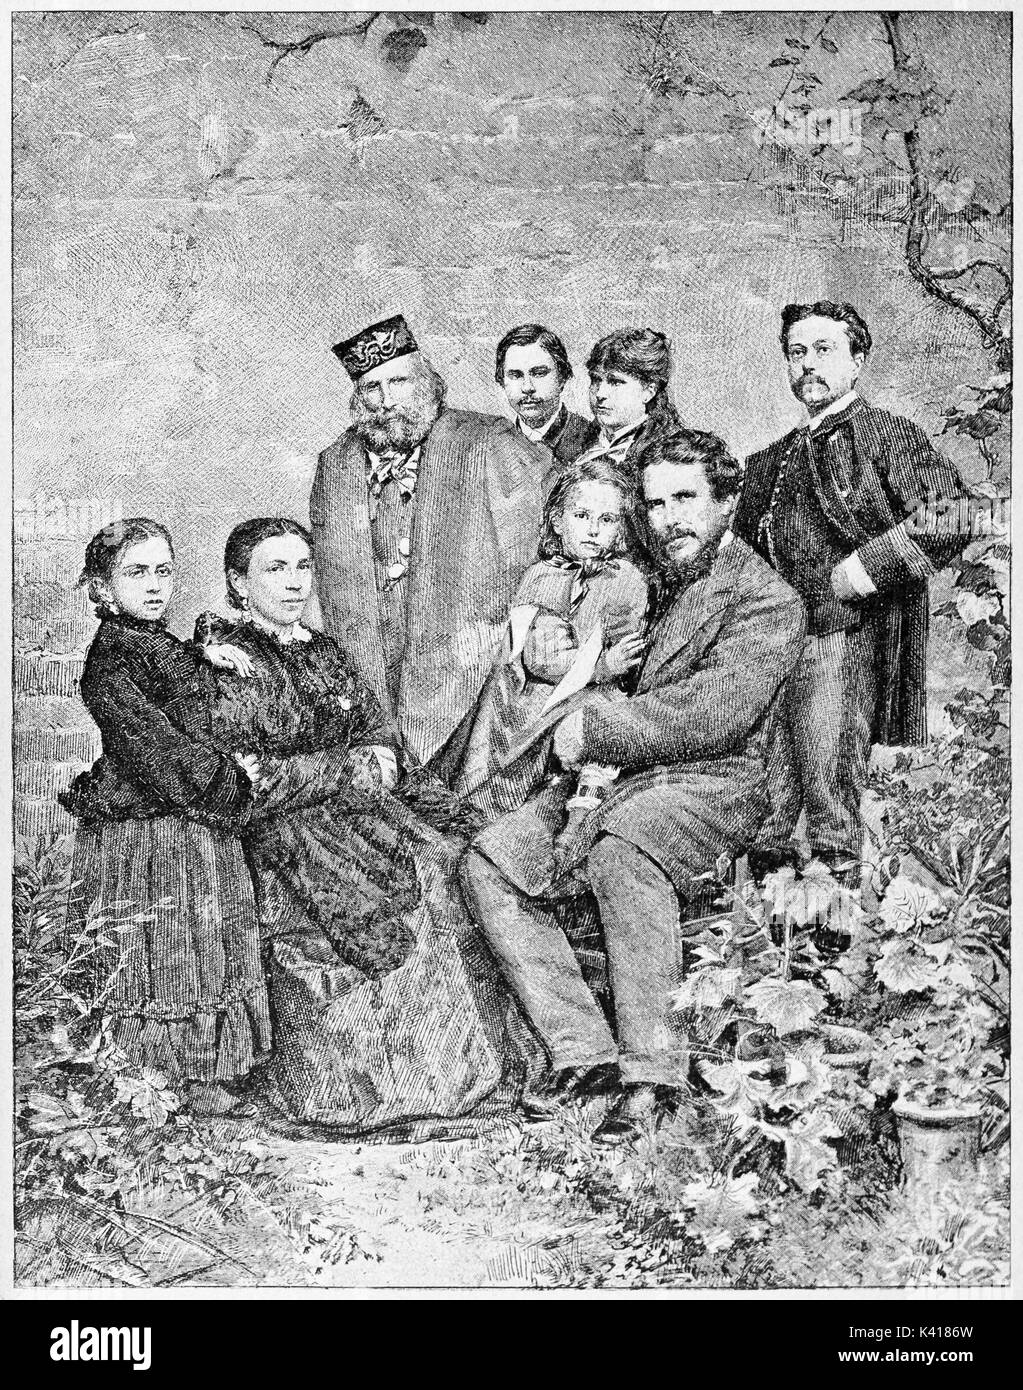 La famille de Garibaldi. Giuseppe Garibaldi avec ses fils et sa femme dans un contexte floréal. Par E. Matania publié le Garibaldi e i suoi Tempi Milan Italie 1884 Banque D'Images